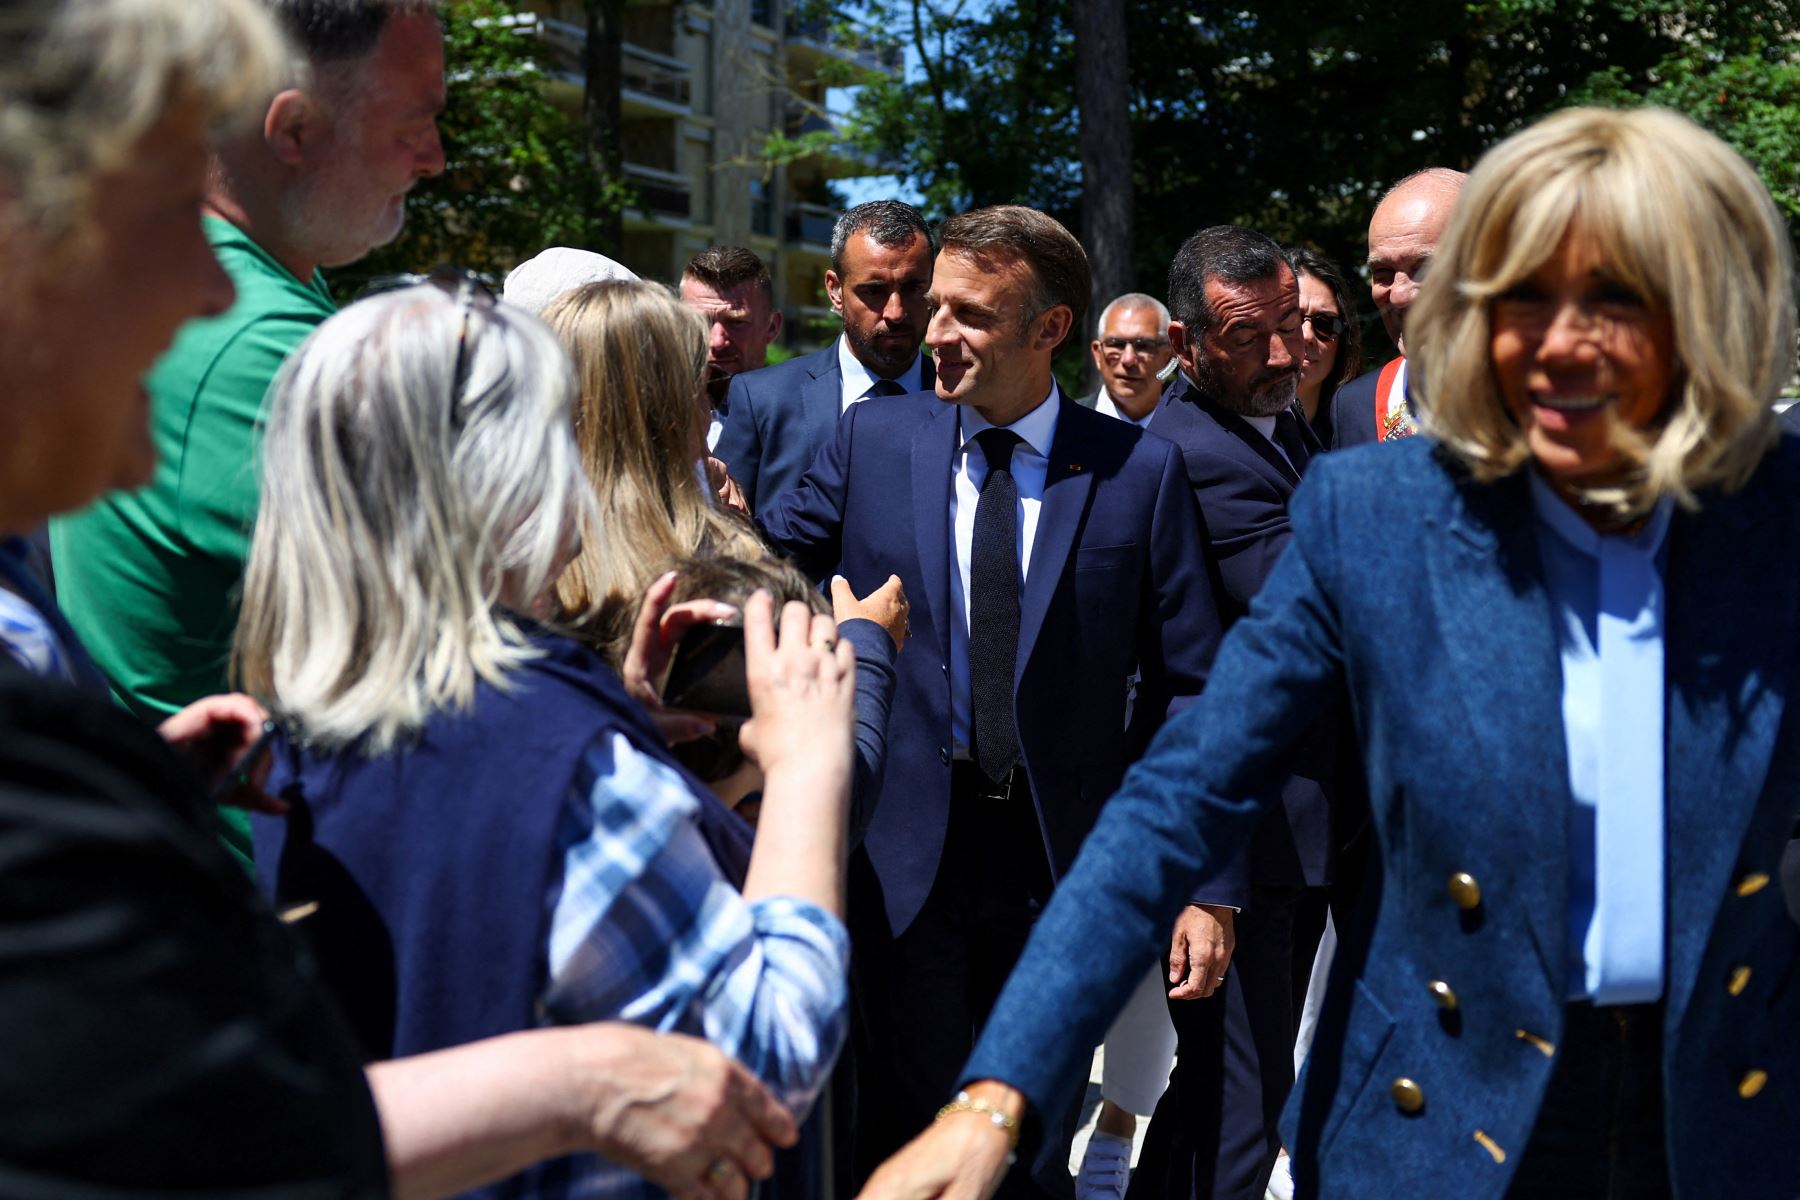 El presidente de Francia, Emmanuel Macron , flanqueado por su esposa Brigitte Macron , saluda a la gente fuera de un colegio electoral a su llegada para votar por las elecciones al Parlamento Europeo en Le Touquet, al norte de Francia.
Foto: AFP